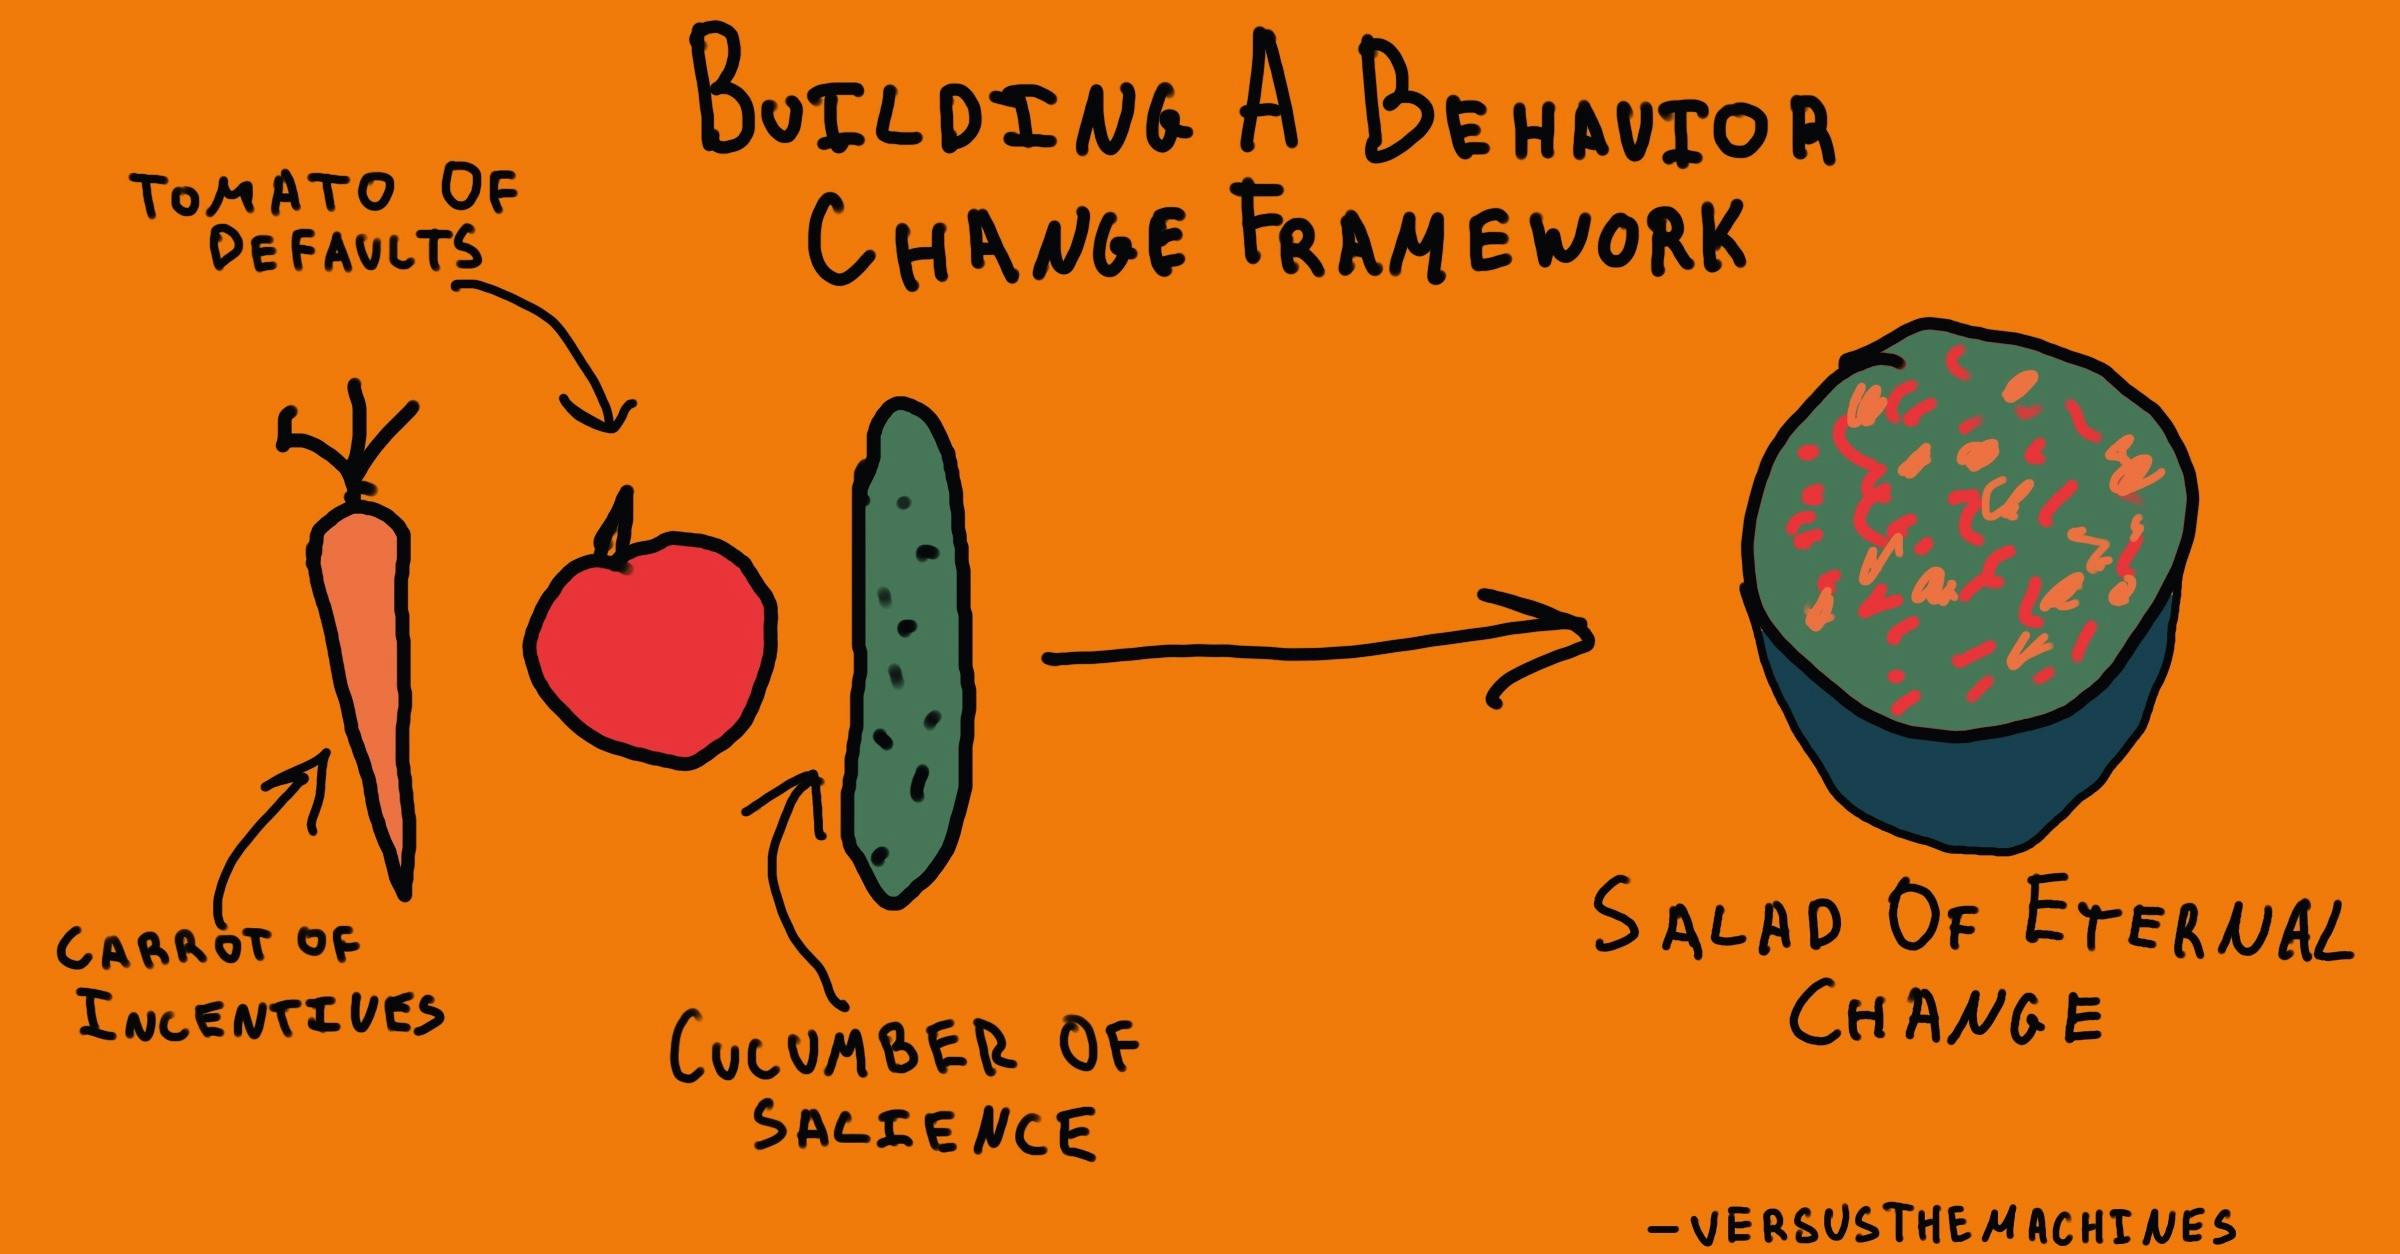 building a behavior change framework